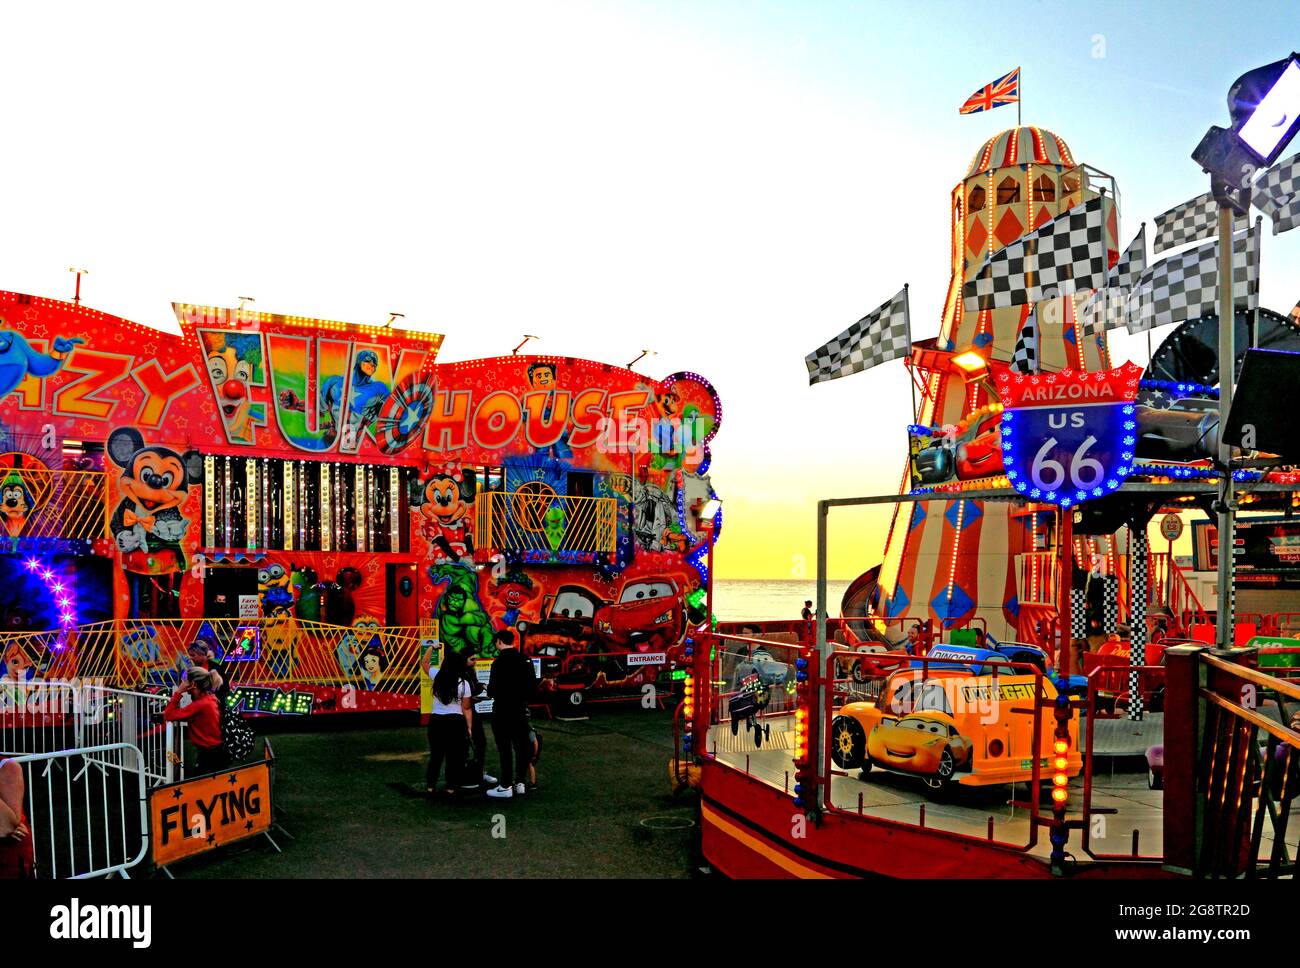 Hunstanton, Funfair, fairground, night, amusements, lights, illuminations, Pleasure Beach, Norfolk, England Stock Photo